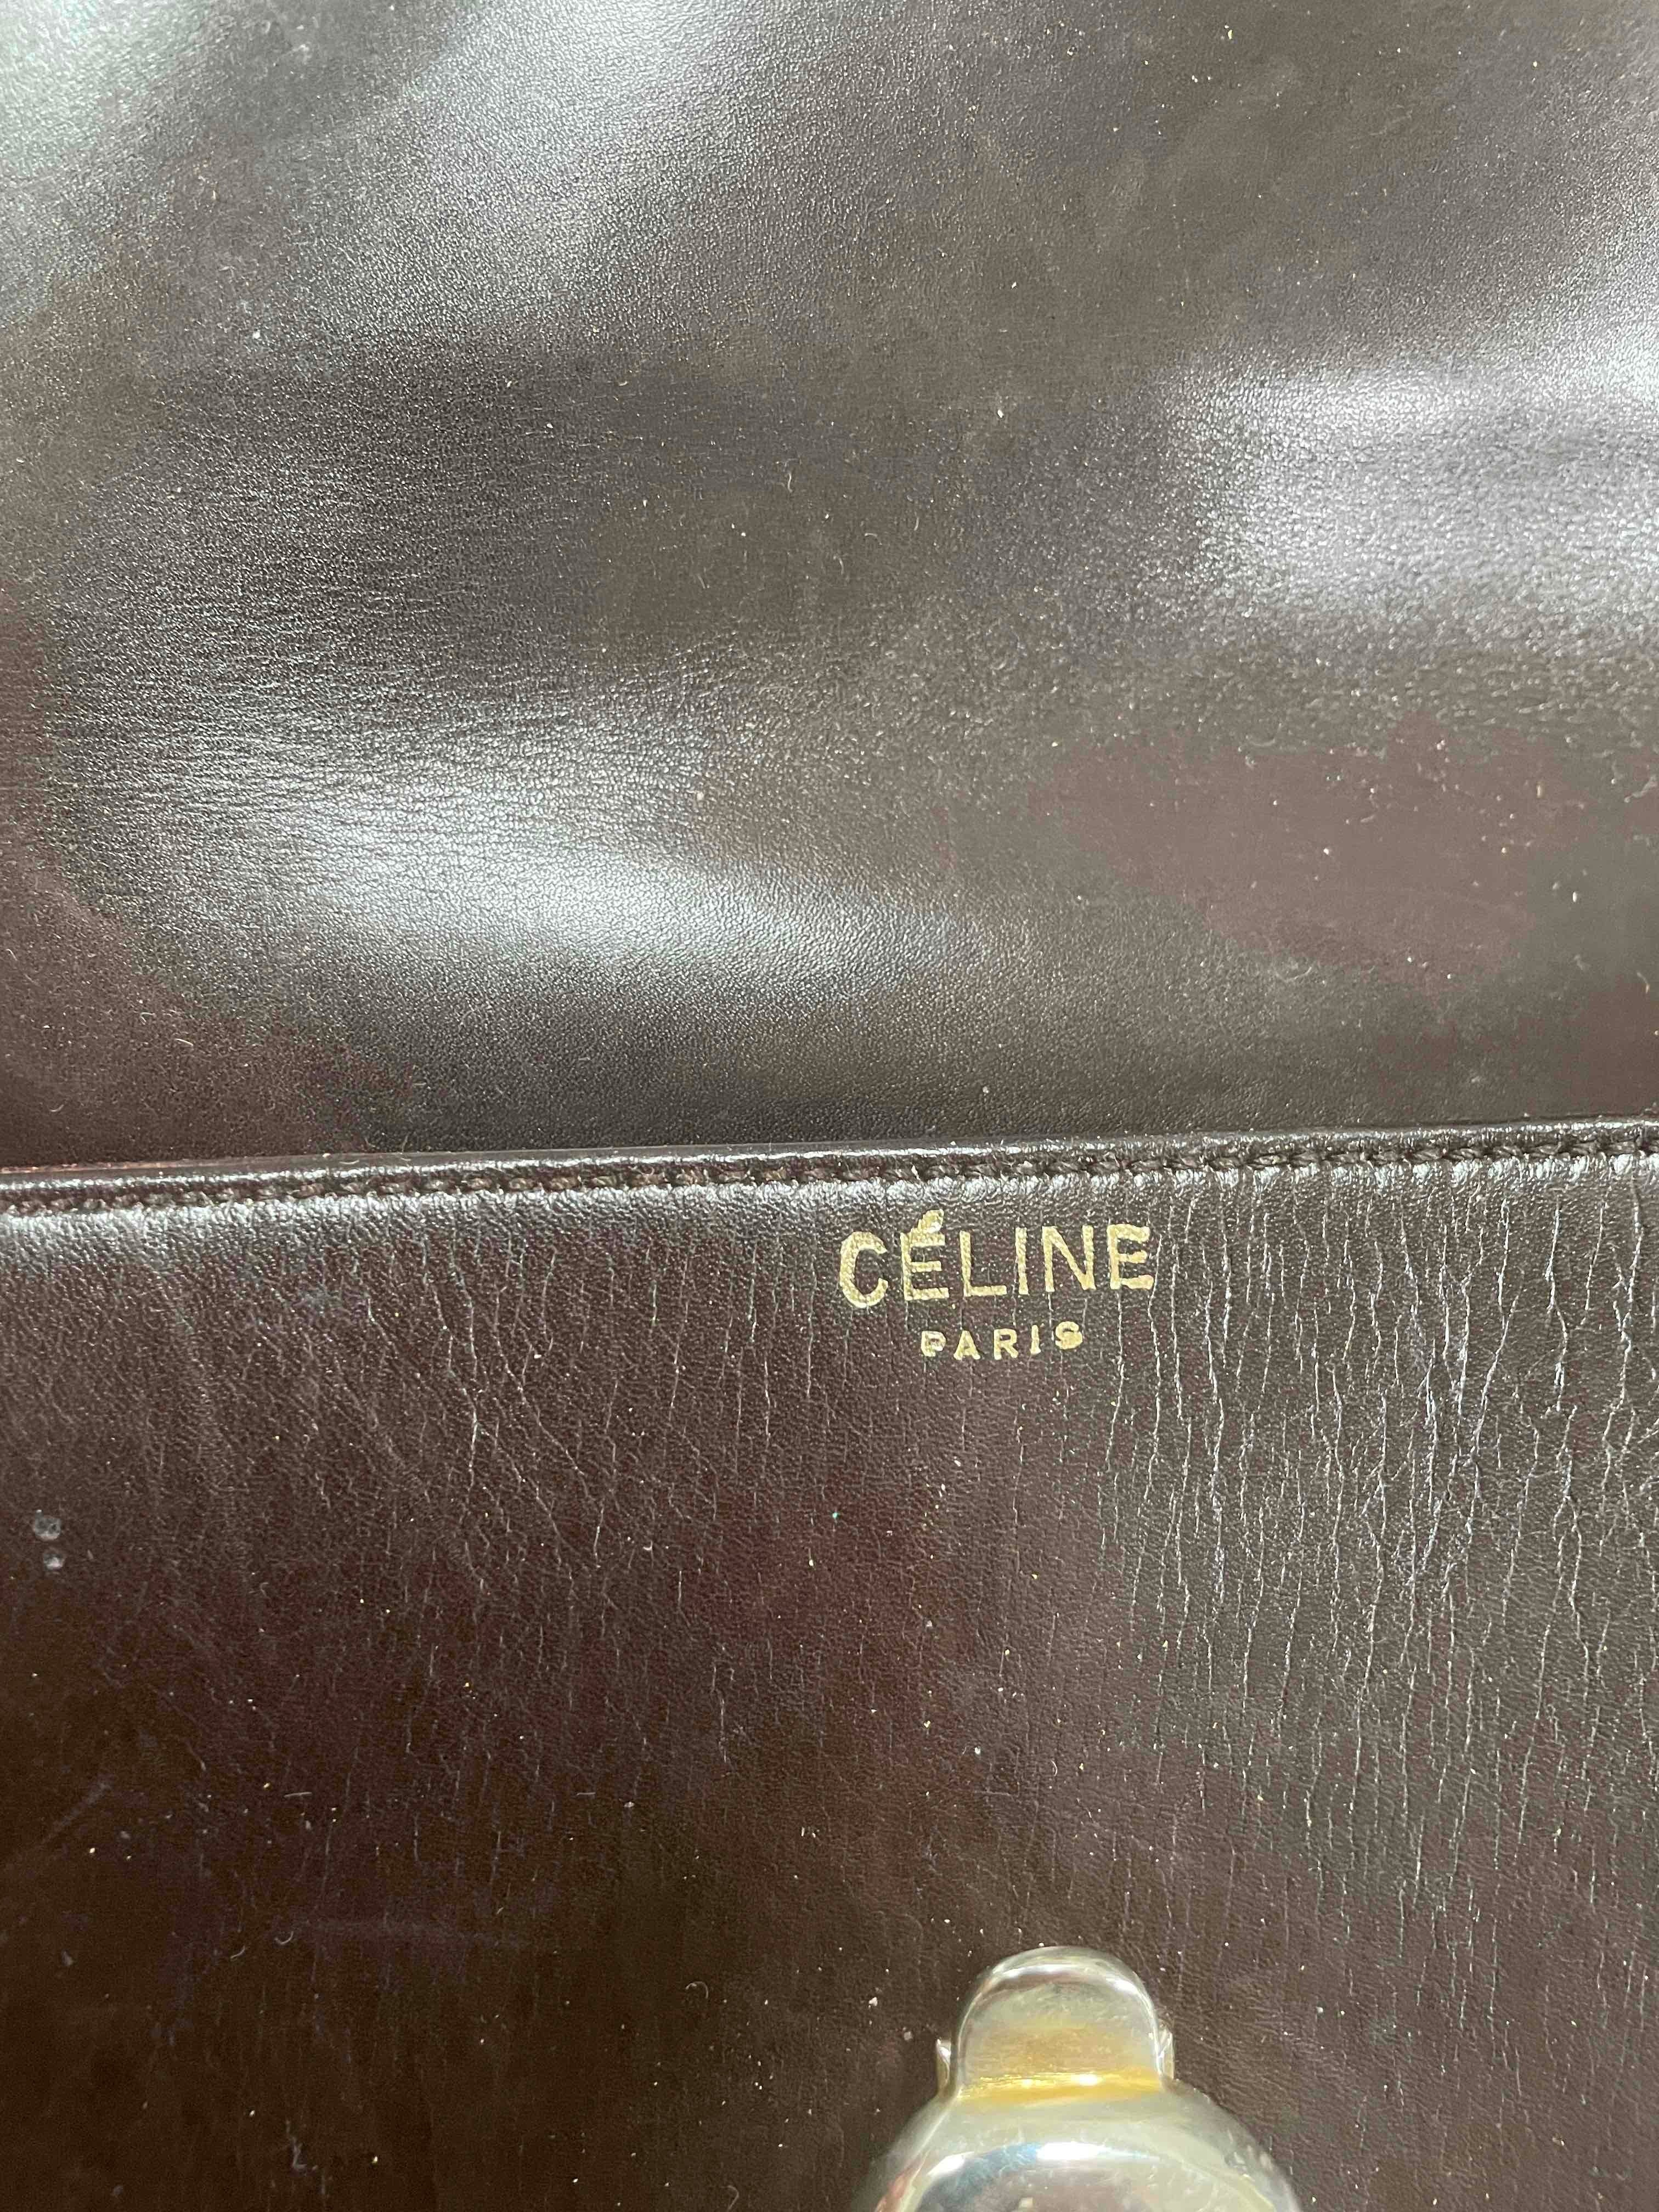 CÉLINE Paris Black canvas clutch bag with brown leather… | Drouot.com